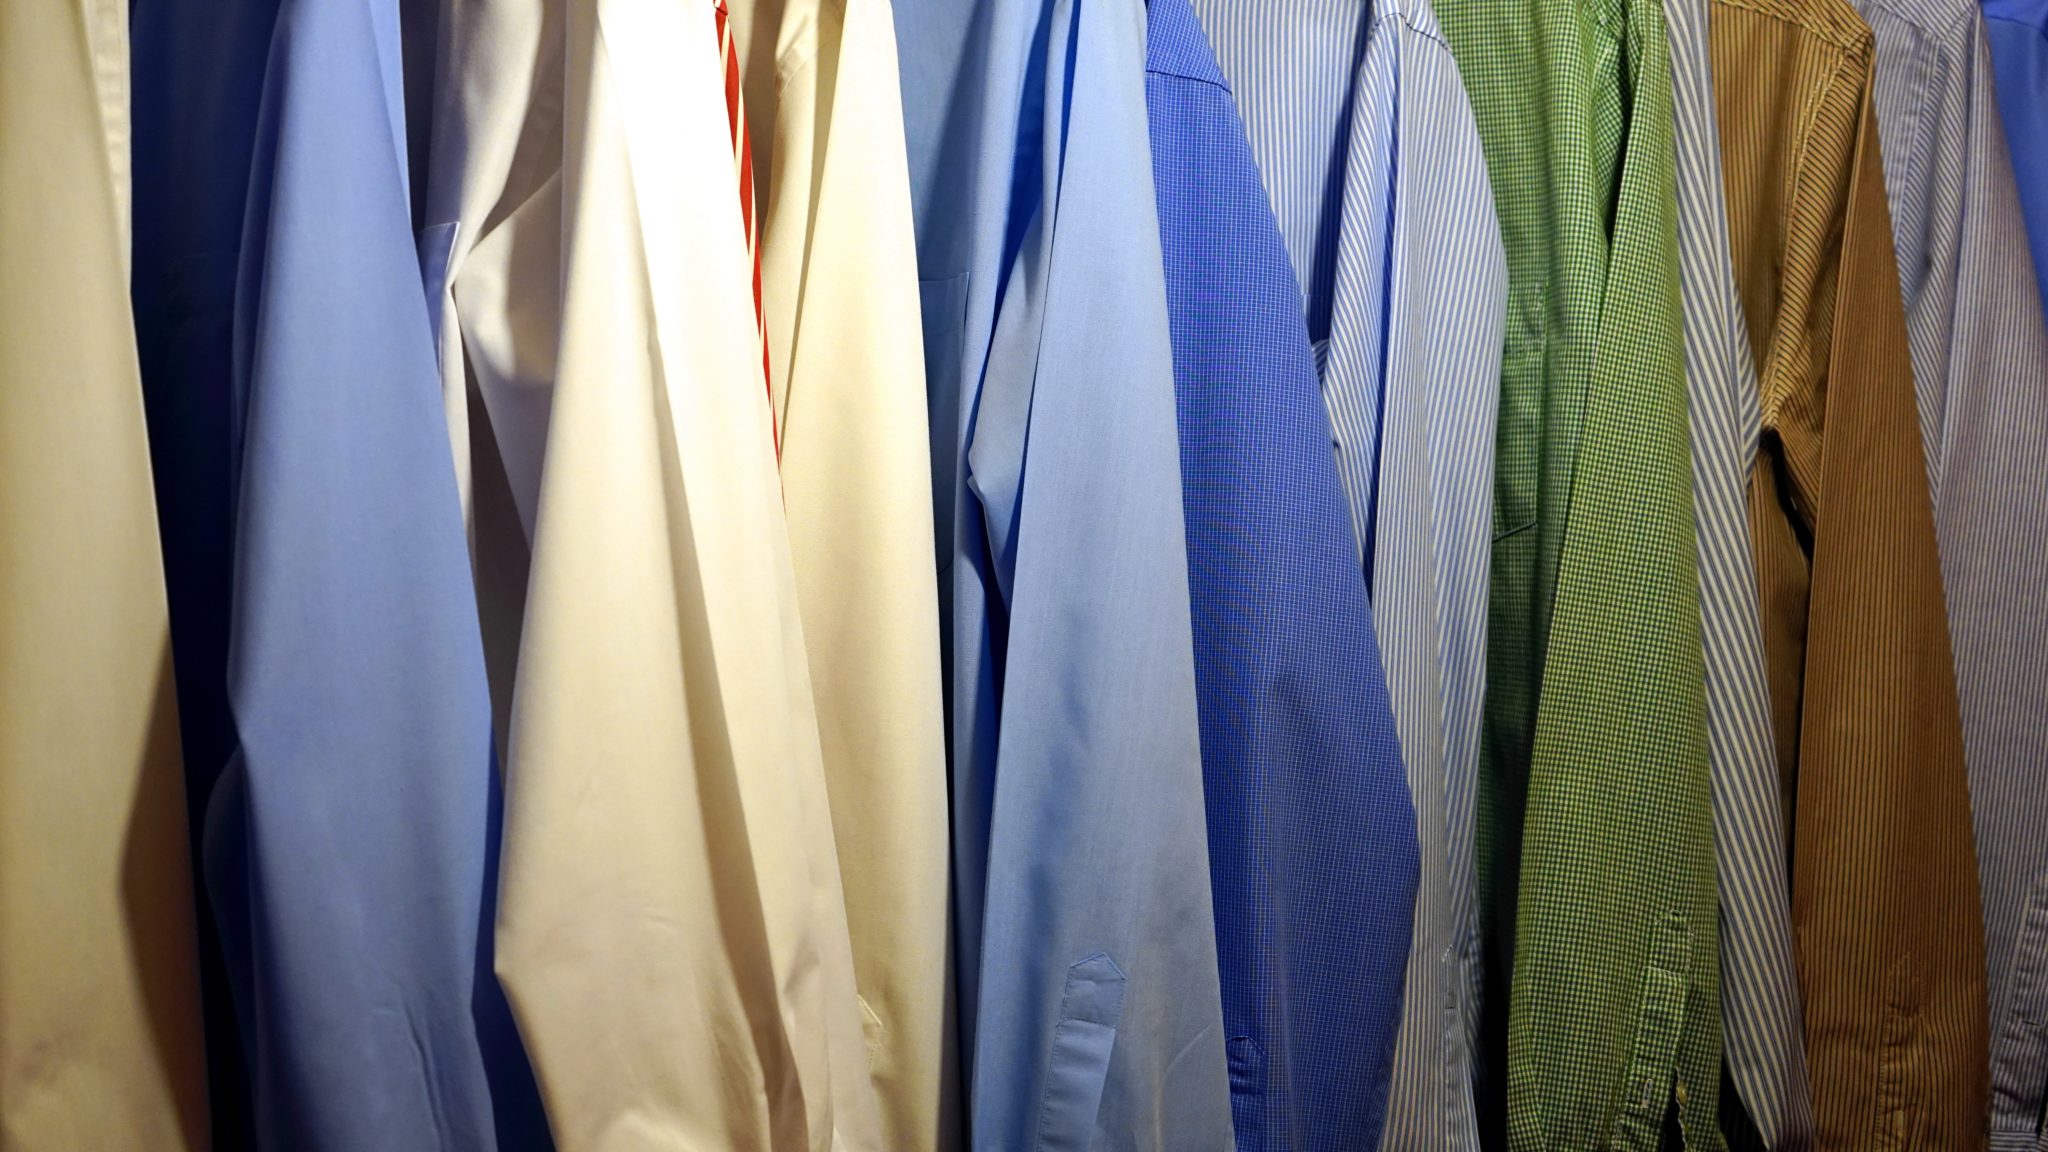 na zdjęciu znajdują się rękawy koszul w odcieniach żółci, błękitu oraz zieleni